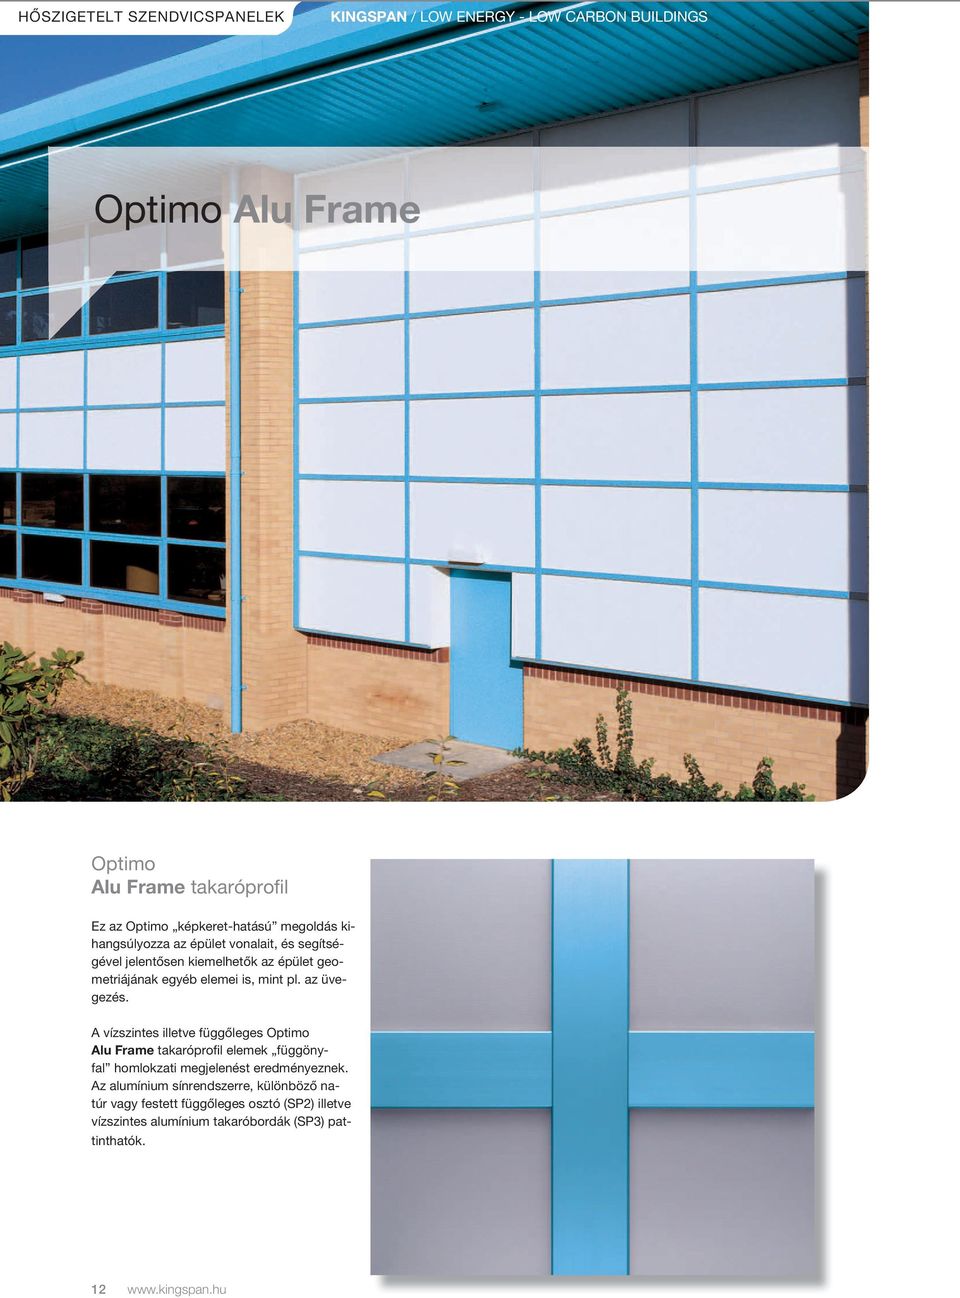 mint pl. az üvegezés. a vízszintes illetve függőleges Optimo Alu Frame takaróprofil elemek függönyfal homlokzati megjelenést eredményeznek.